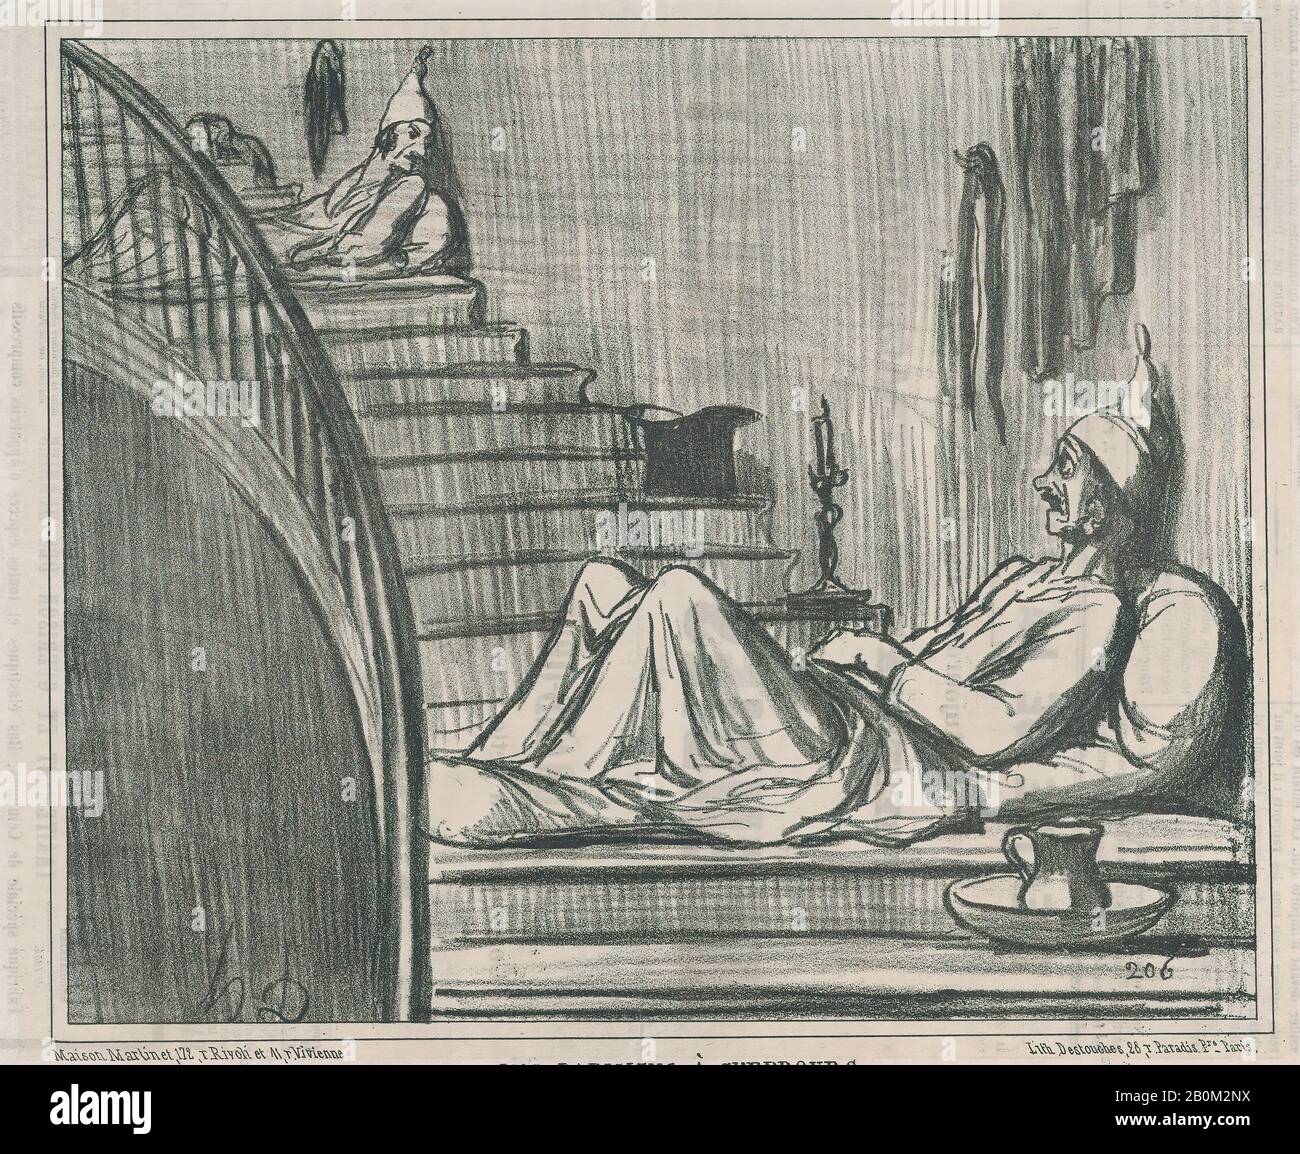 Honoré Daumier, Les Parisiens à Cherbourg, di Actualités, pubblicato in le Charivari, 16-17 agosto 1858, Actualités, Honoré Daumier (francese, Marsiglia 1808–1879 Valmondois), 16-17 agosto 1858, litografia su carta da giornale; secondo stato di due (Delteil), foglio: 9 in 3/8 ×. (24,8 × 33,9 cm), immagine: 8 3/8 × 10 1/16 in. (21,3 × 25,6 cm), stampe Foto Stock